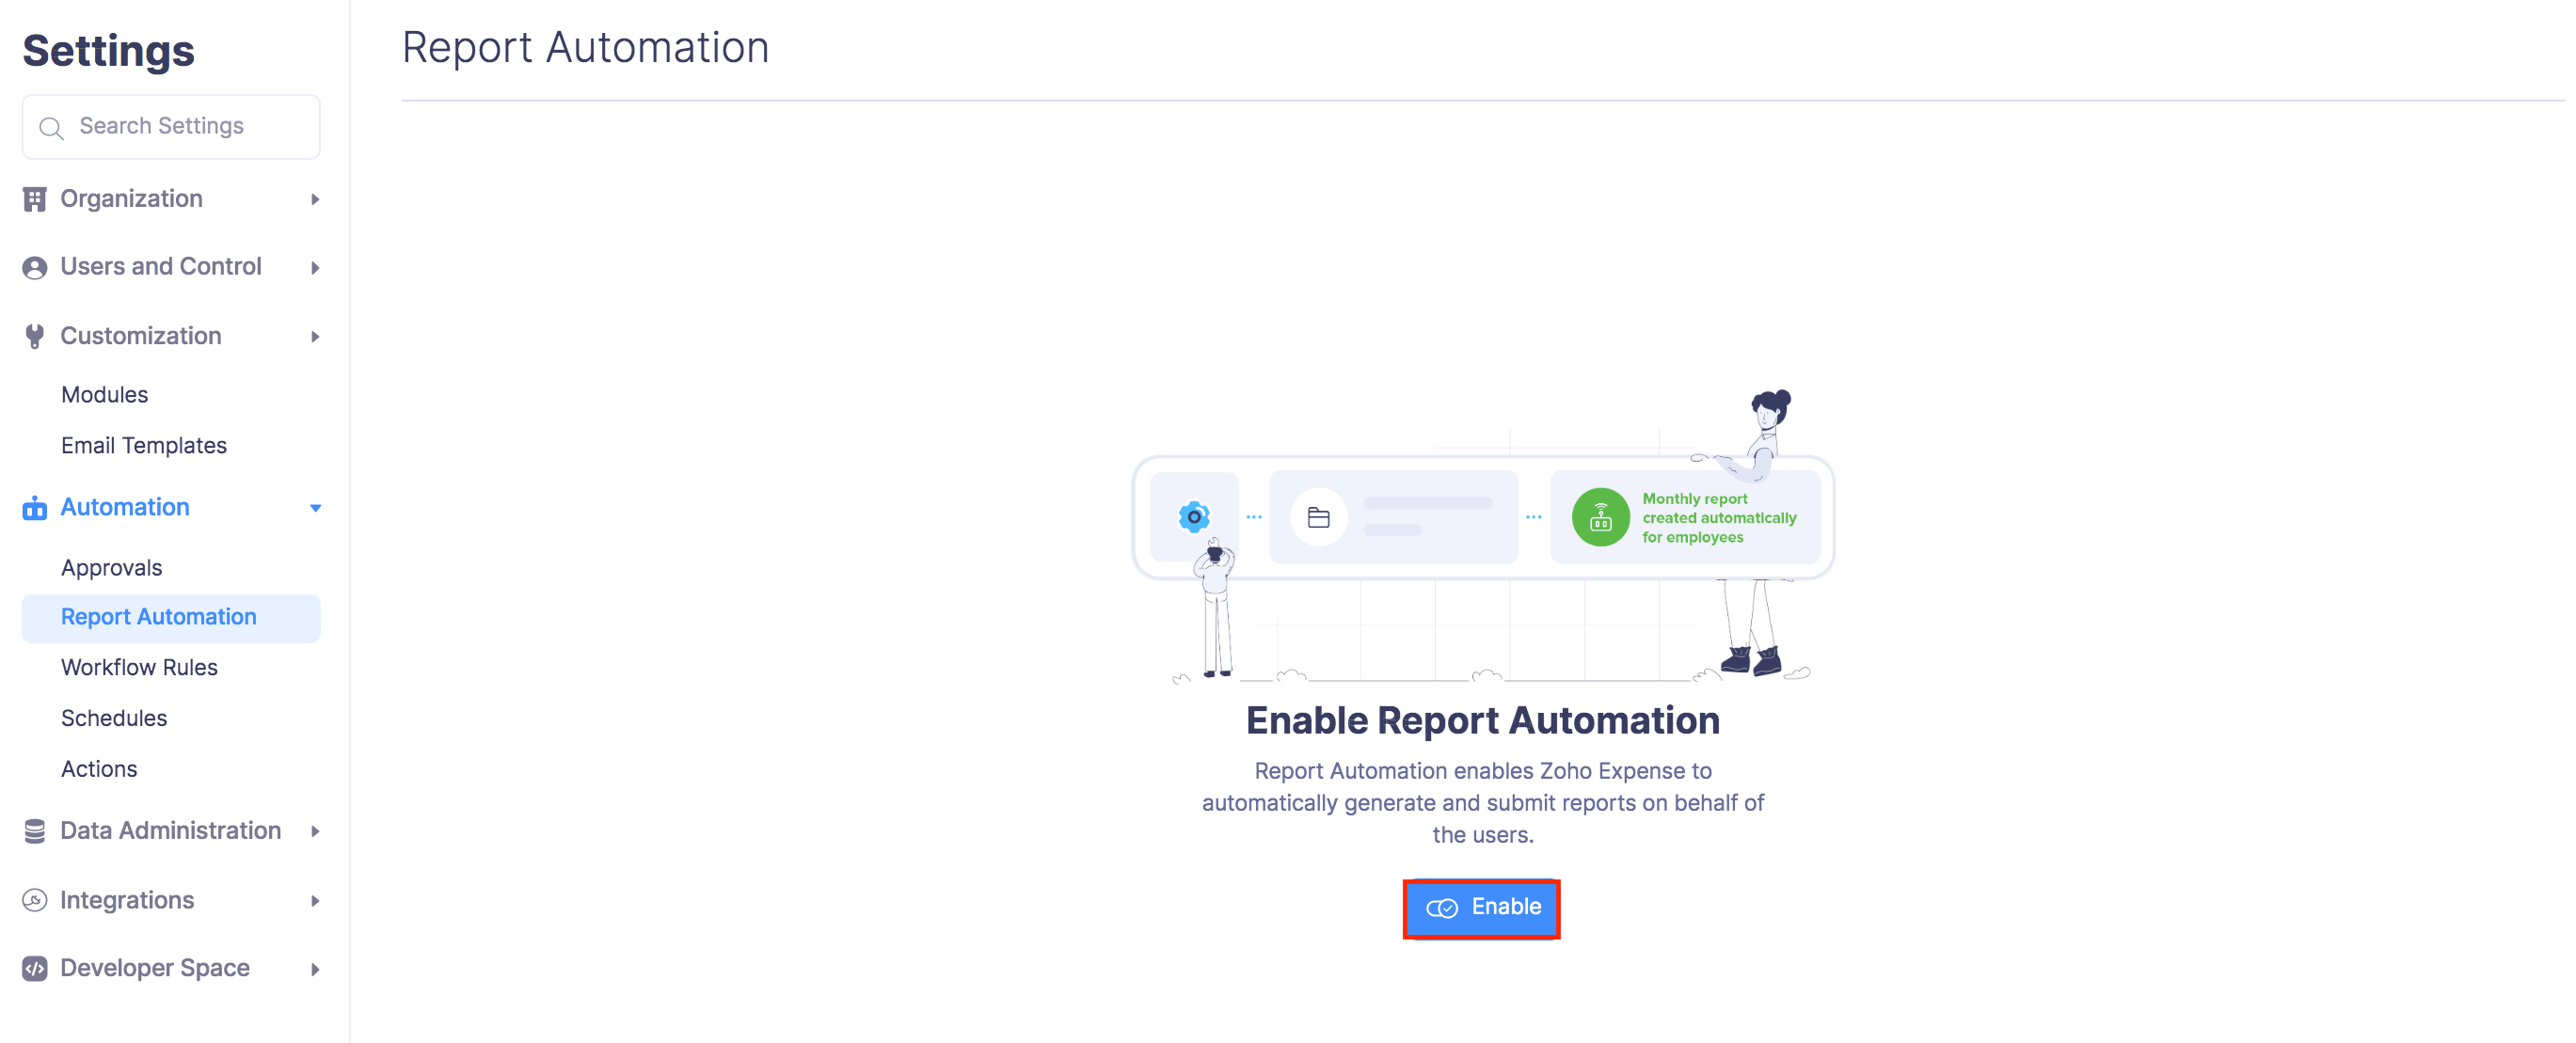 Configure Report Automation